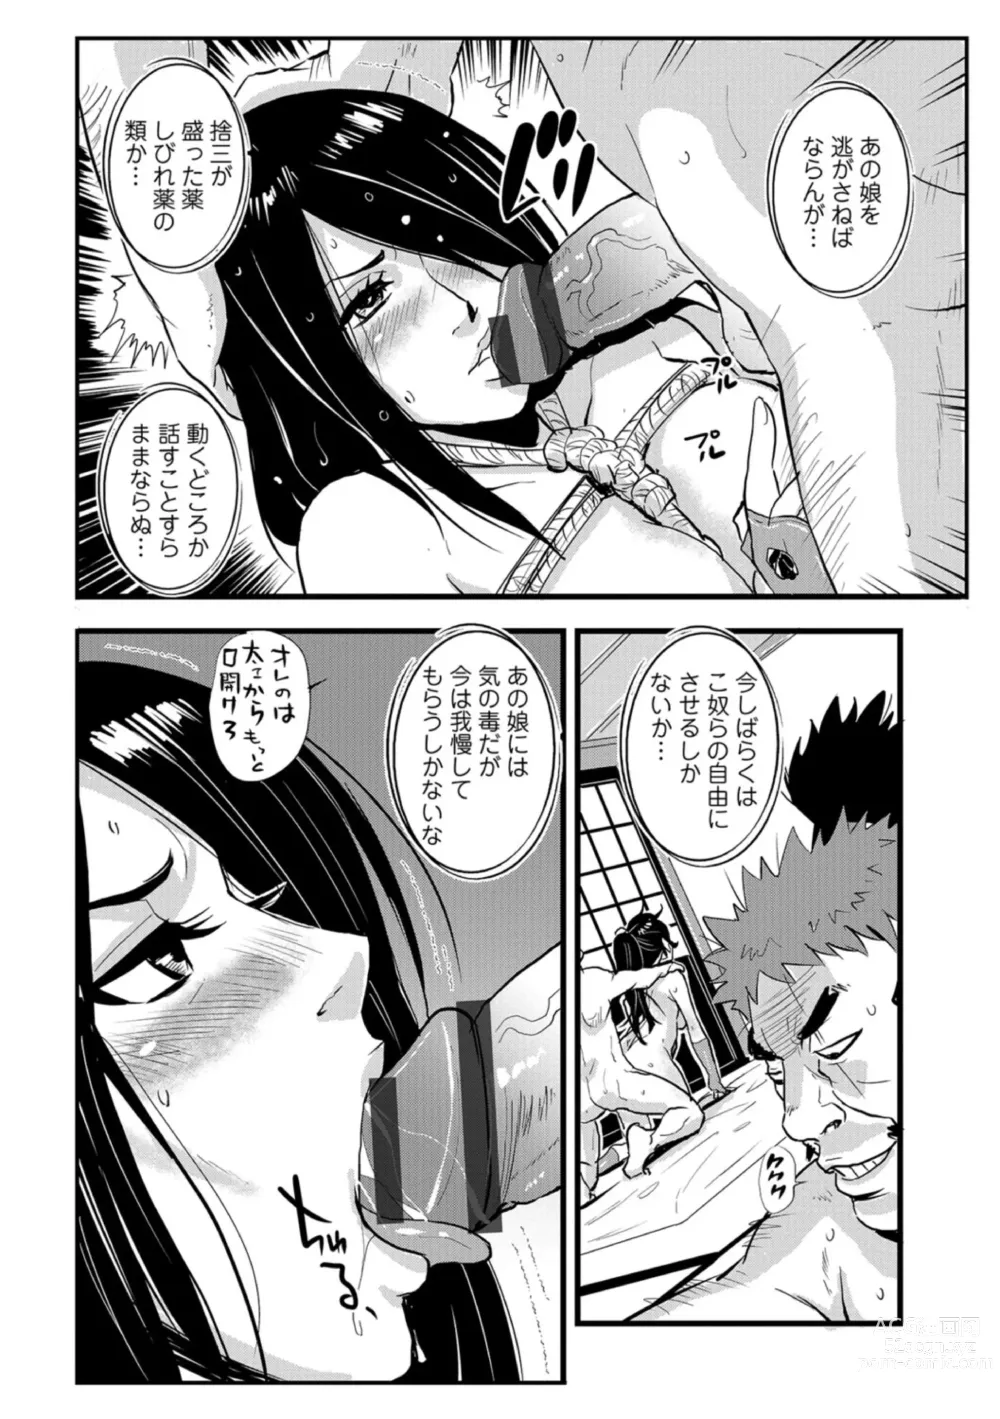 Page 4 of manga Harami samurai 04 ~Yarare Onna to Ame no Yoru~